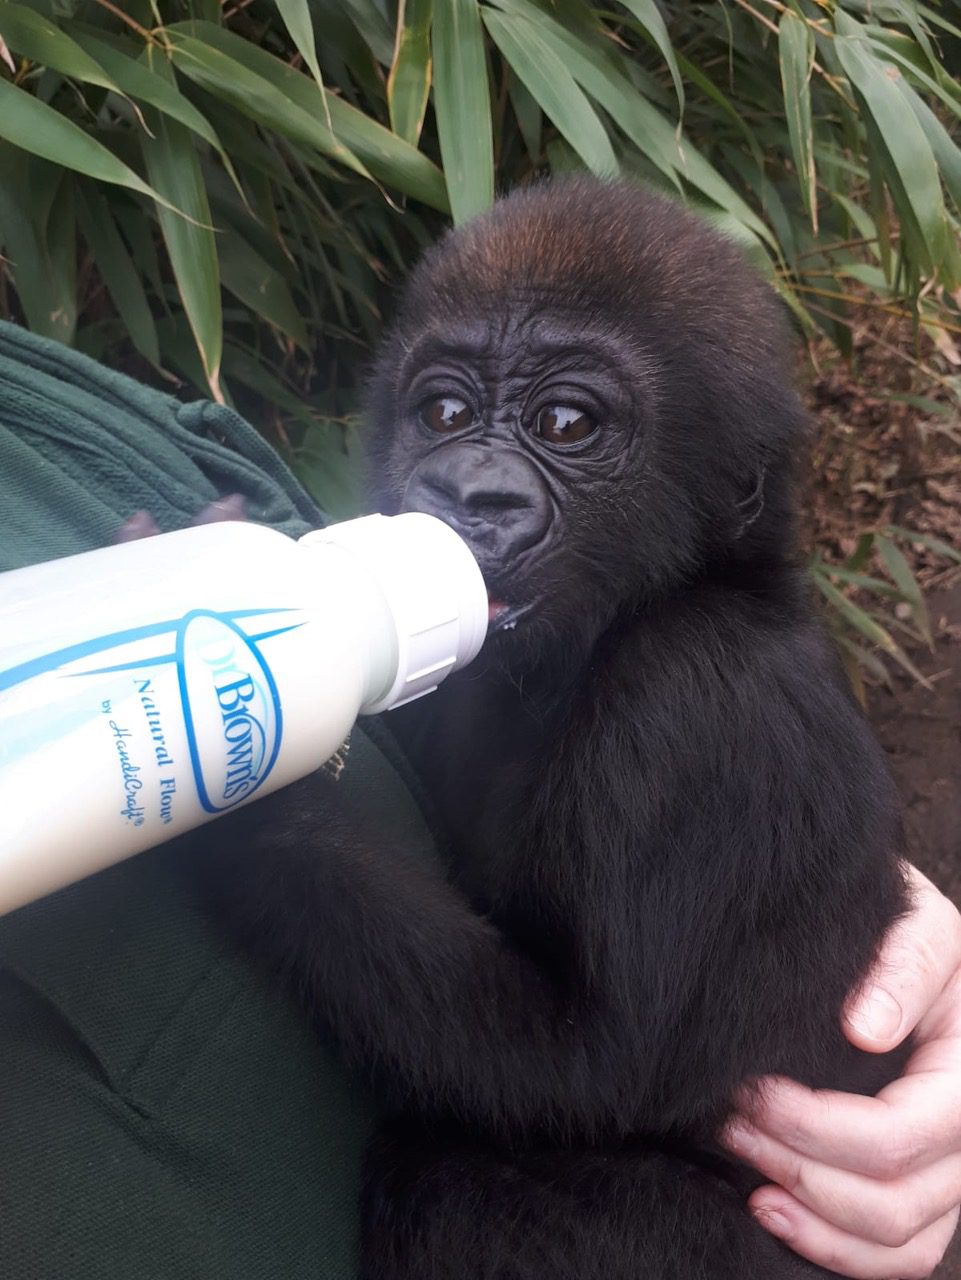 Baby Gorilla bottle feeding